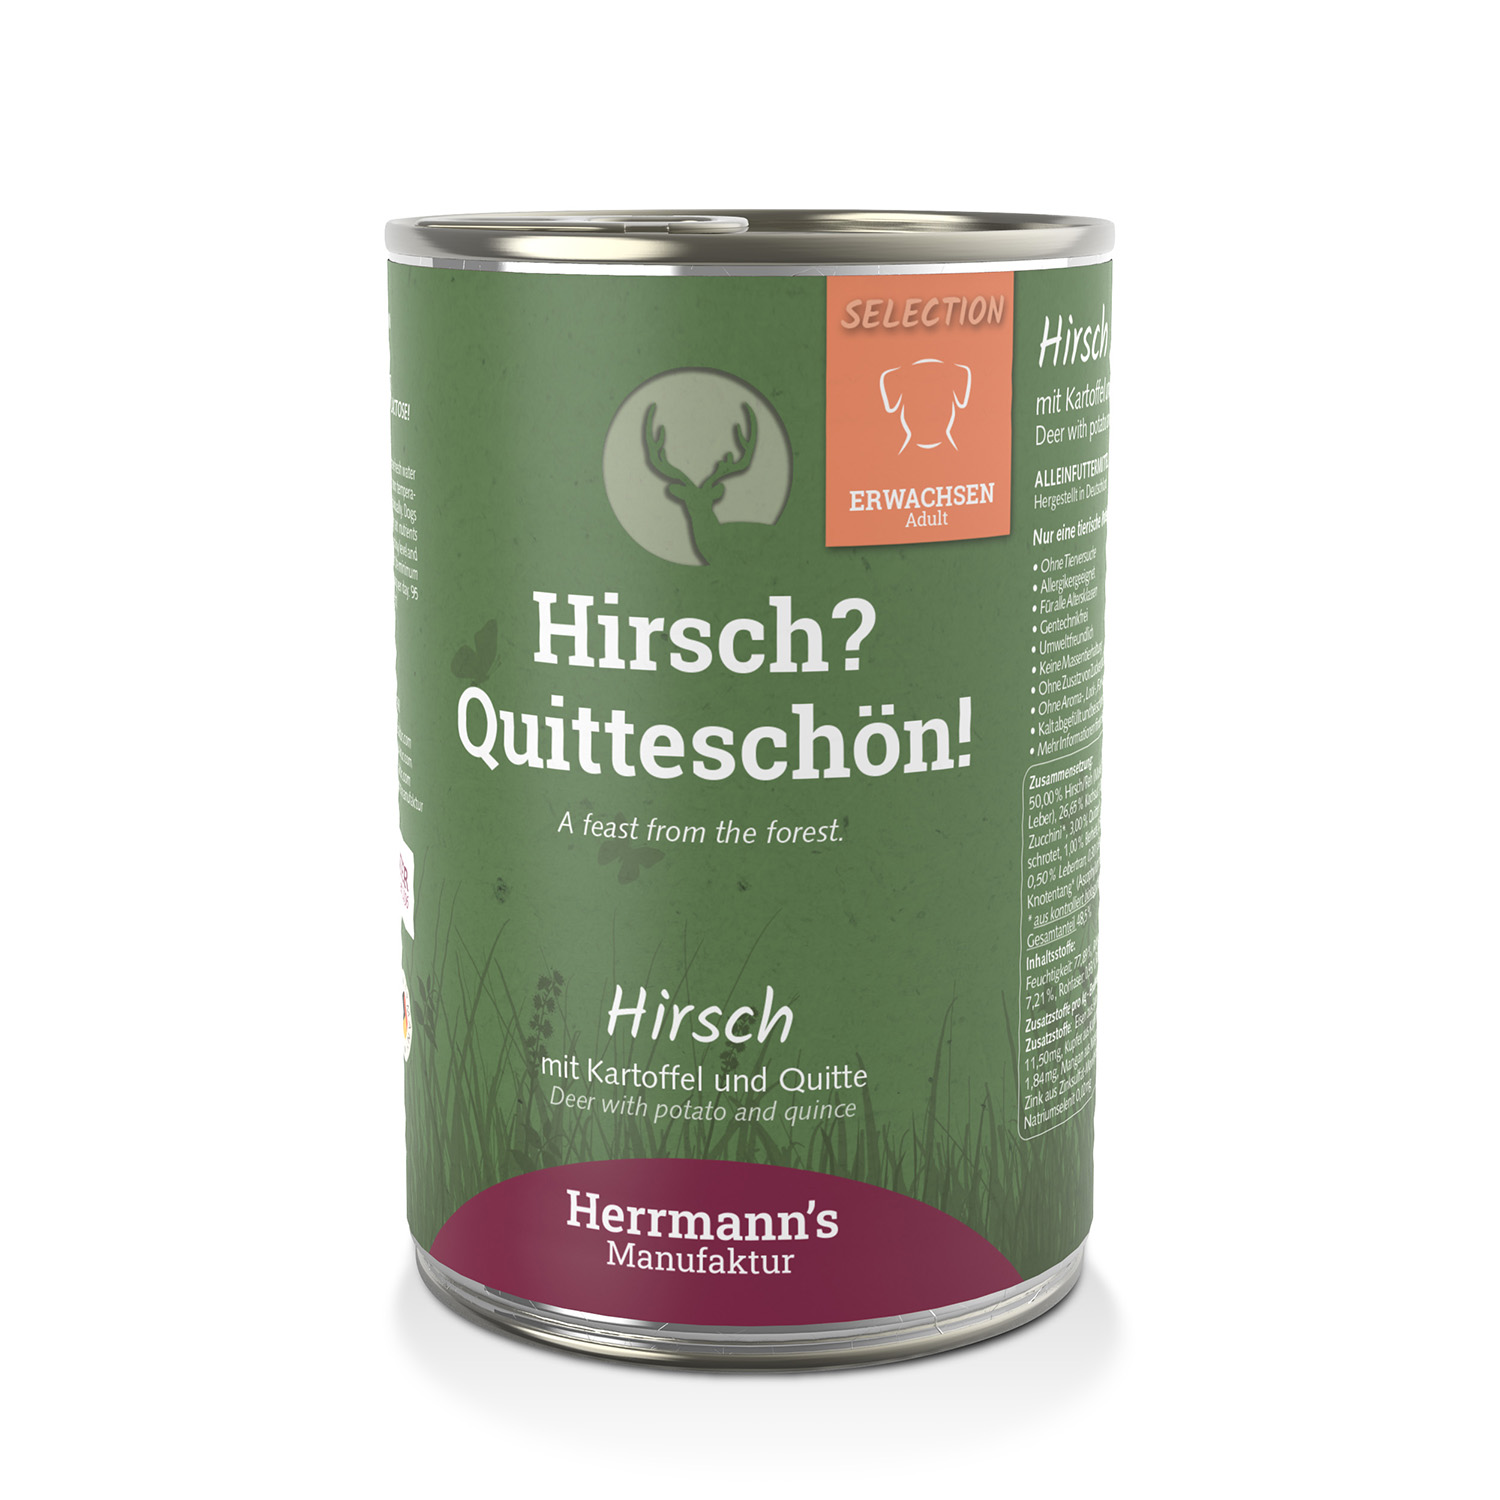 Hirsch mit Kartoffel und Quitte von Herrmann’s – 400g